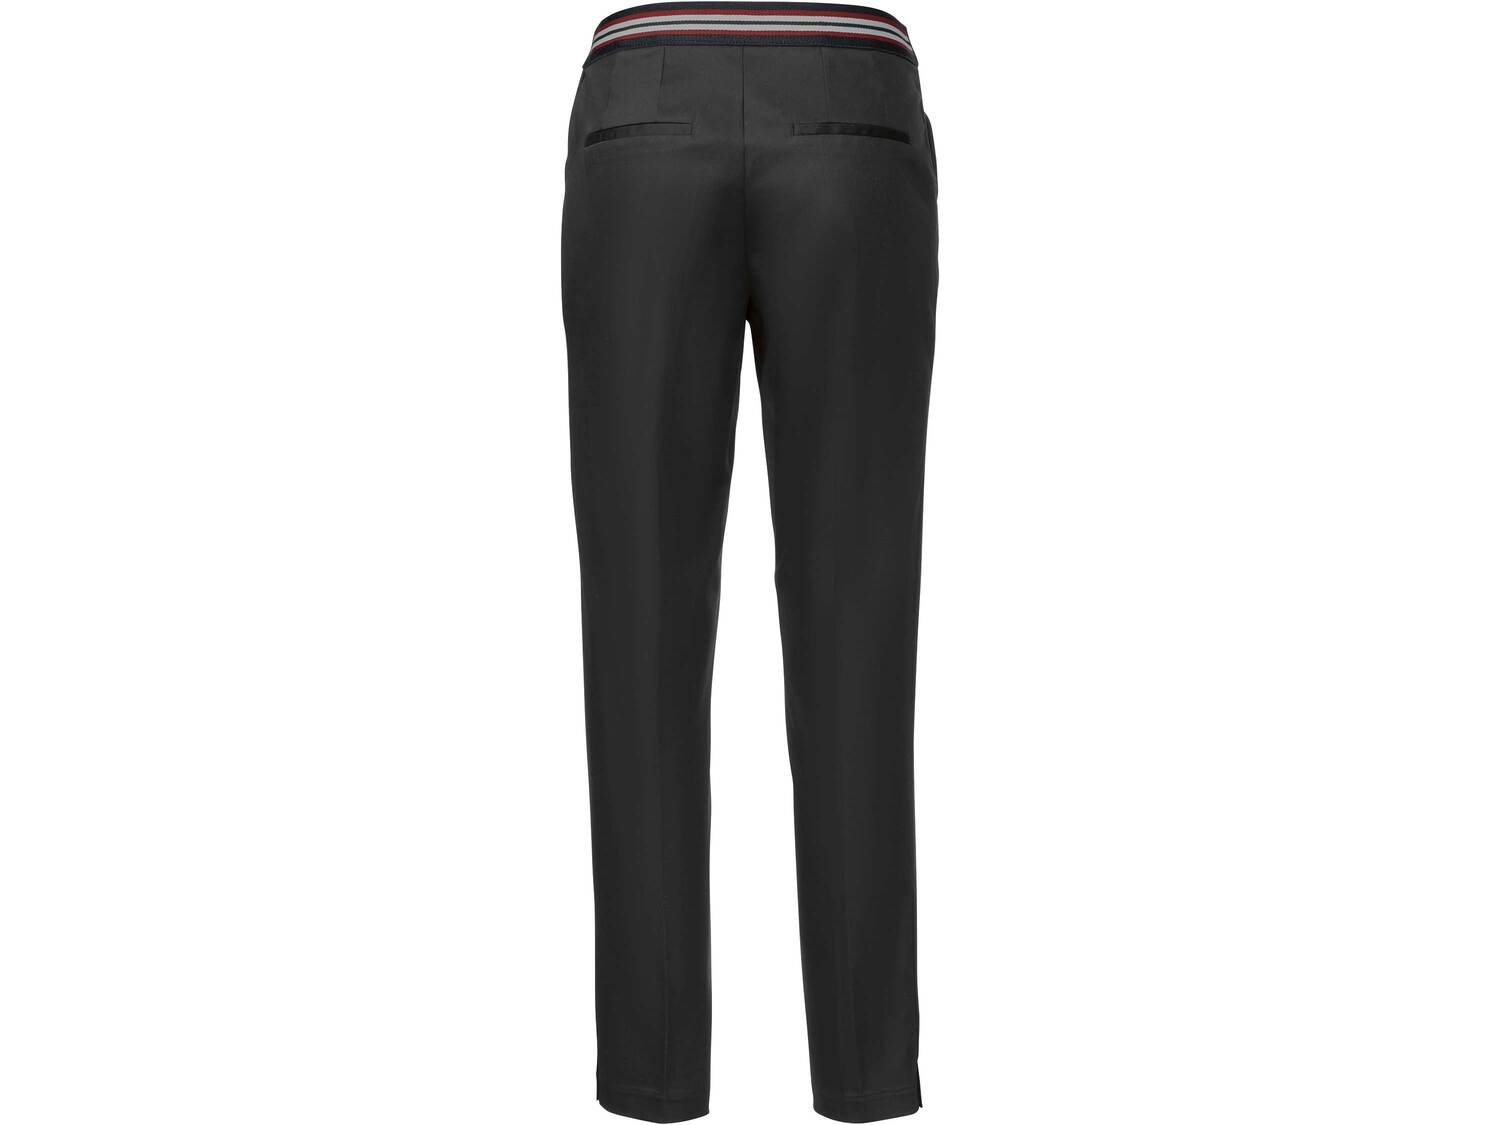 Spodnie damskie z bawełną Esmara, cena 44,99 PLN 
- rozmiary: 36-44
- z elastyczną ...